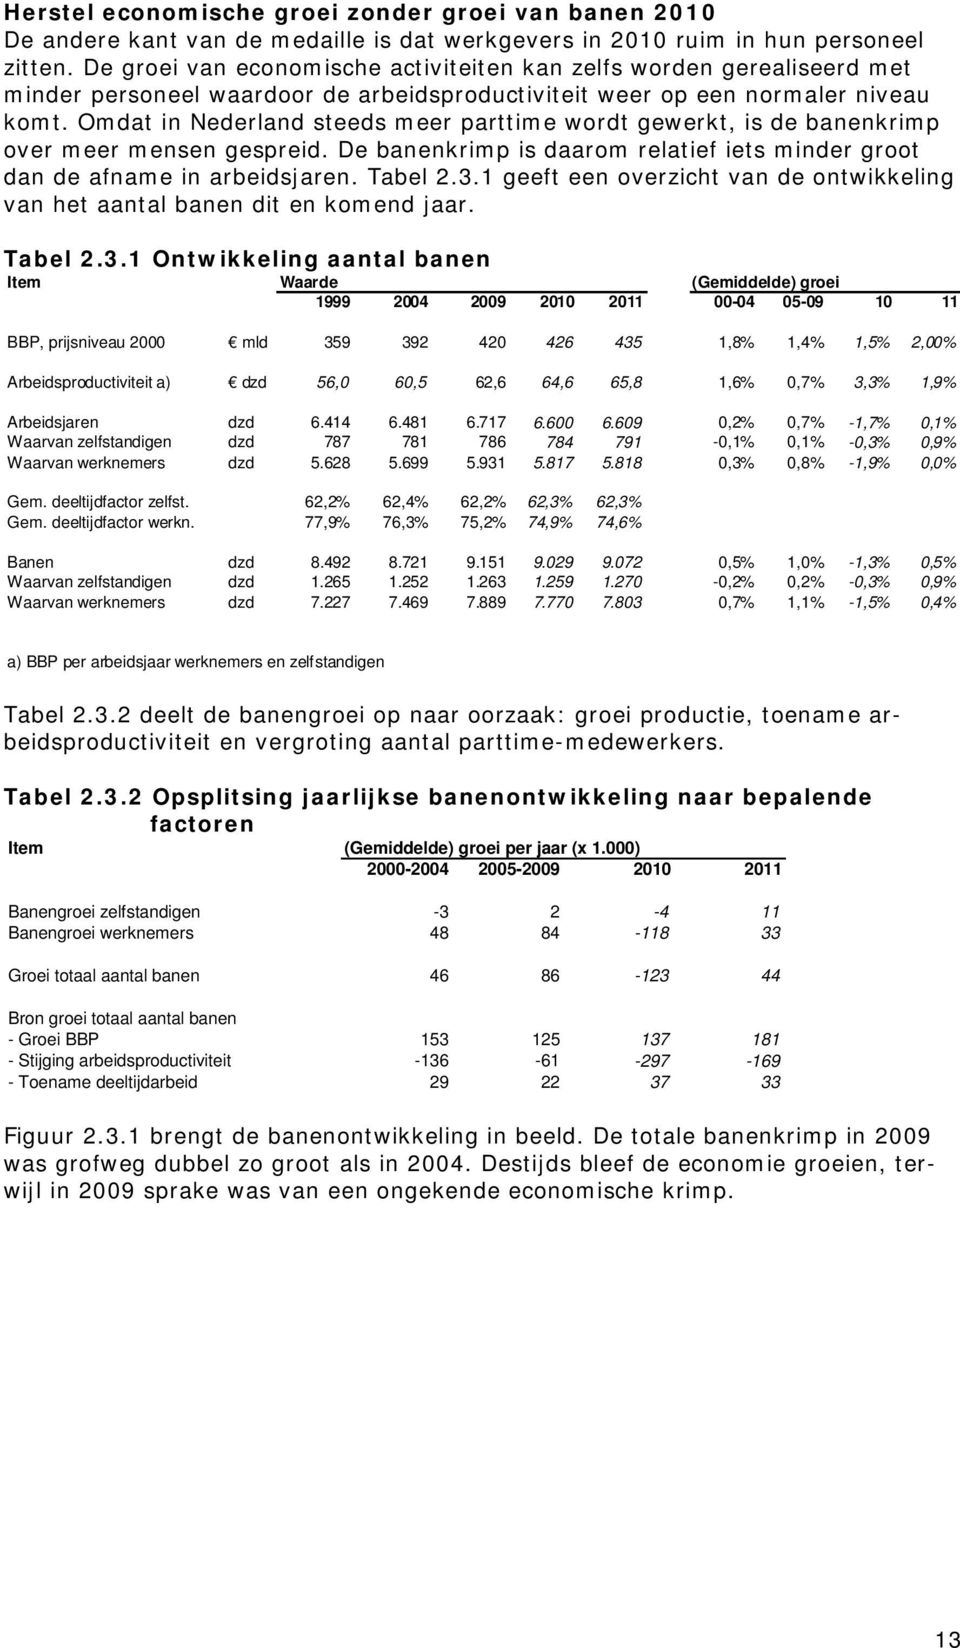 Omdat in Nederland steeds meer parttime wordt gewerkt, is de banenkrimp over meer mensen gespreid. De banenkrimp is daarom relatief iets minder groot dan de afname in arbeidsjaren. Tabel 2.3.